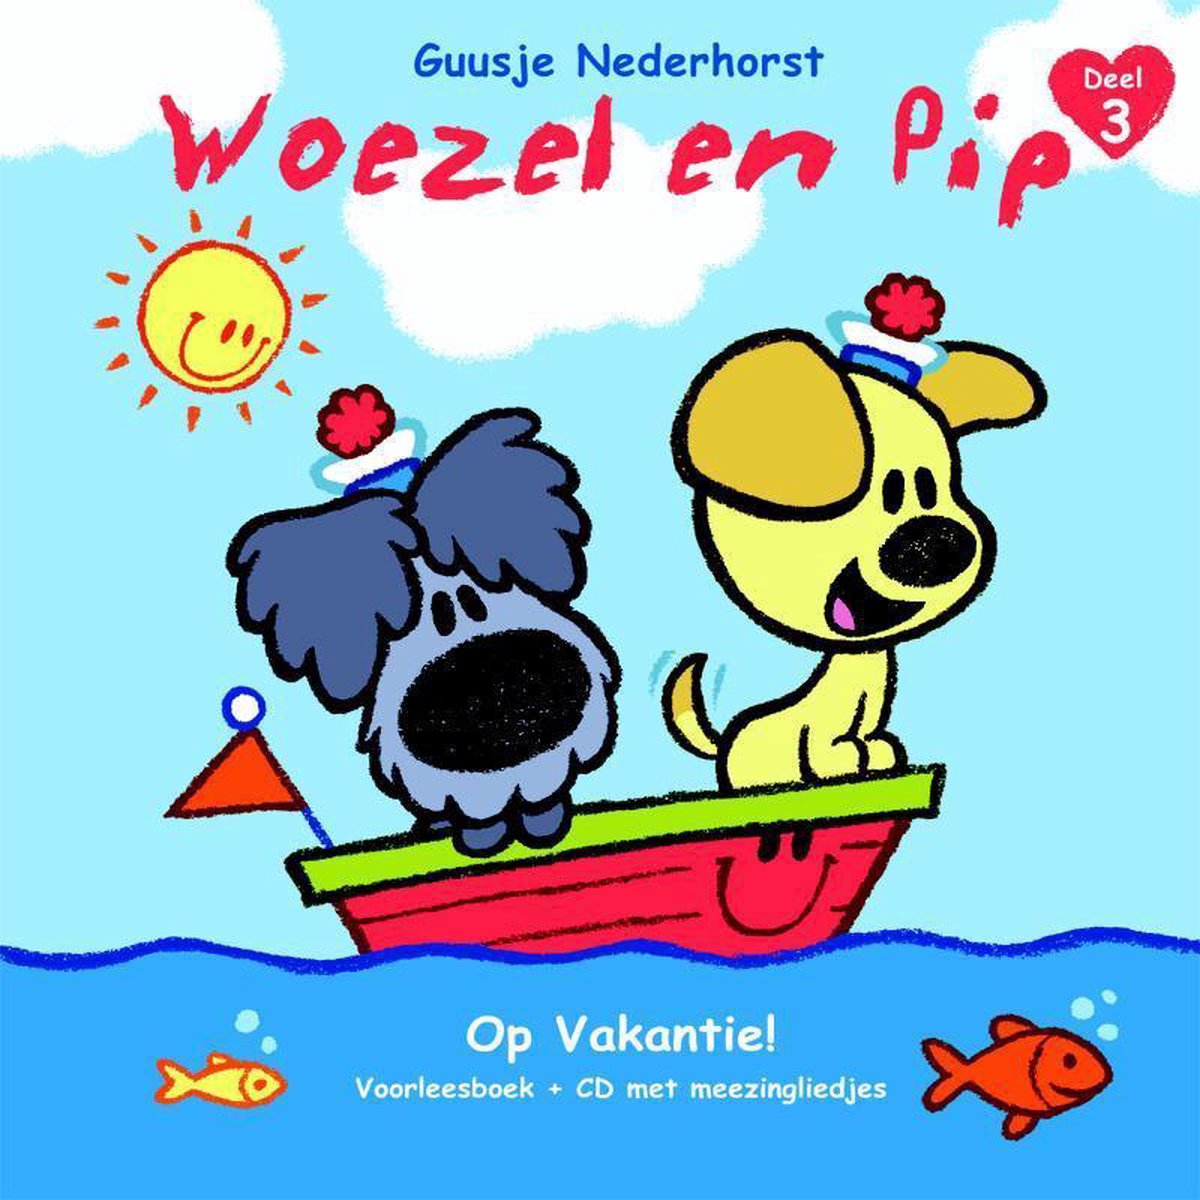 toekomst Scepticisme onstabiel Woezel & Pip deel 3 - Op Vakantie! (met CD vol meezingliedjes), Guusje  Nederhorst |... | bol.com